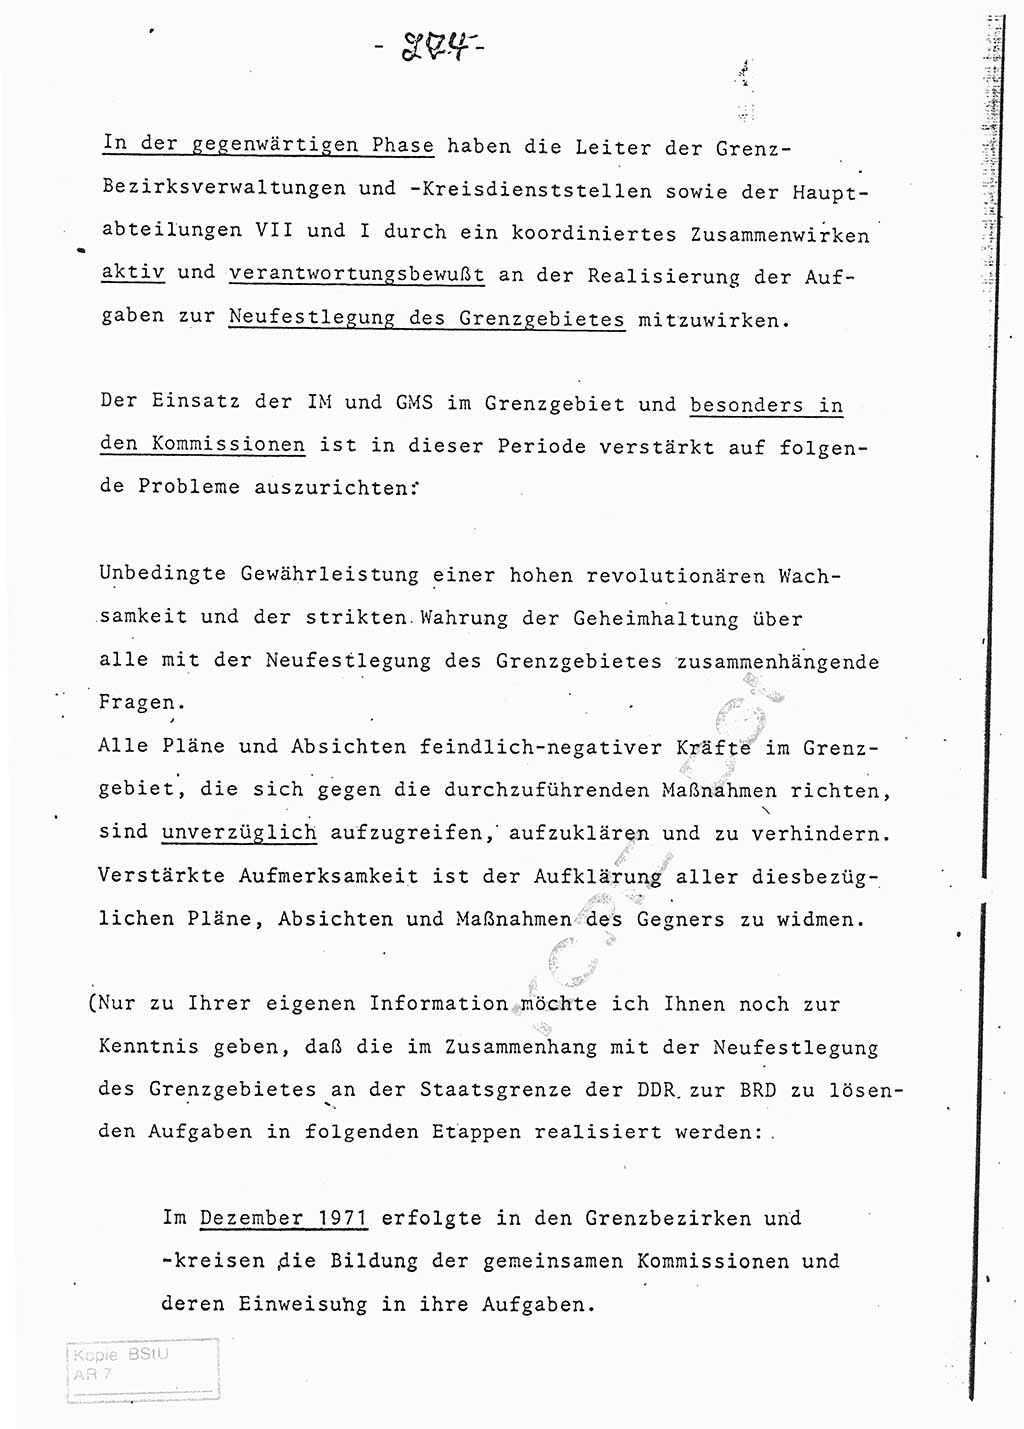 Referat (Entwurf) des Genossen Minister (Generaloberst Erich Mielke) auf der Dienstkonferenz 1972, Ministerium für Staatssicherheit (MfS) [Deutsche Demokratische Republik (DDR)], Der Minister, Geheime Verschlußsache (GVS) 008-150/72, Berlin 25.2.1972, Seite 274 (Ref. Entw. DK MfS DDR Min. GVS 008-150/72 1972, S. 274)